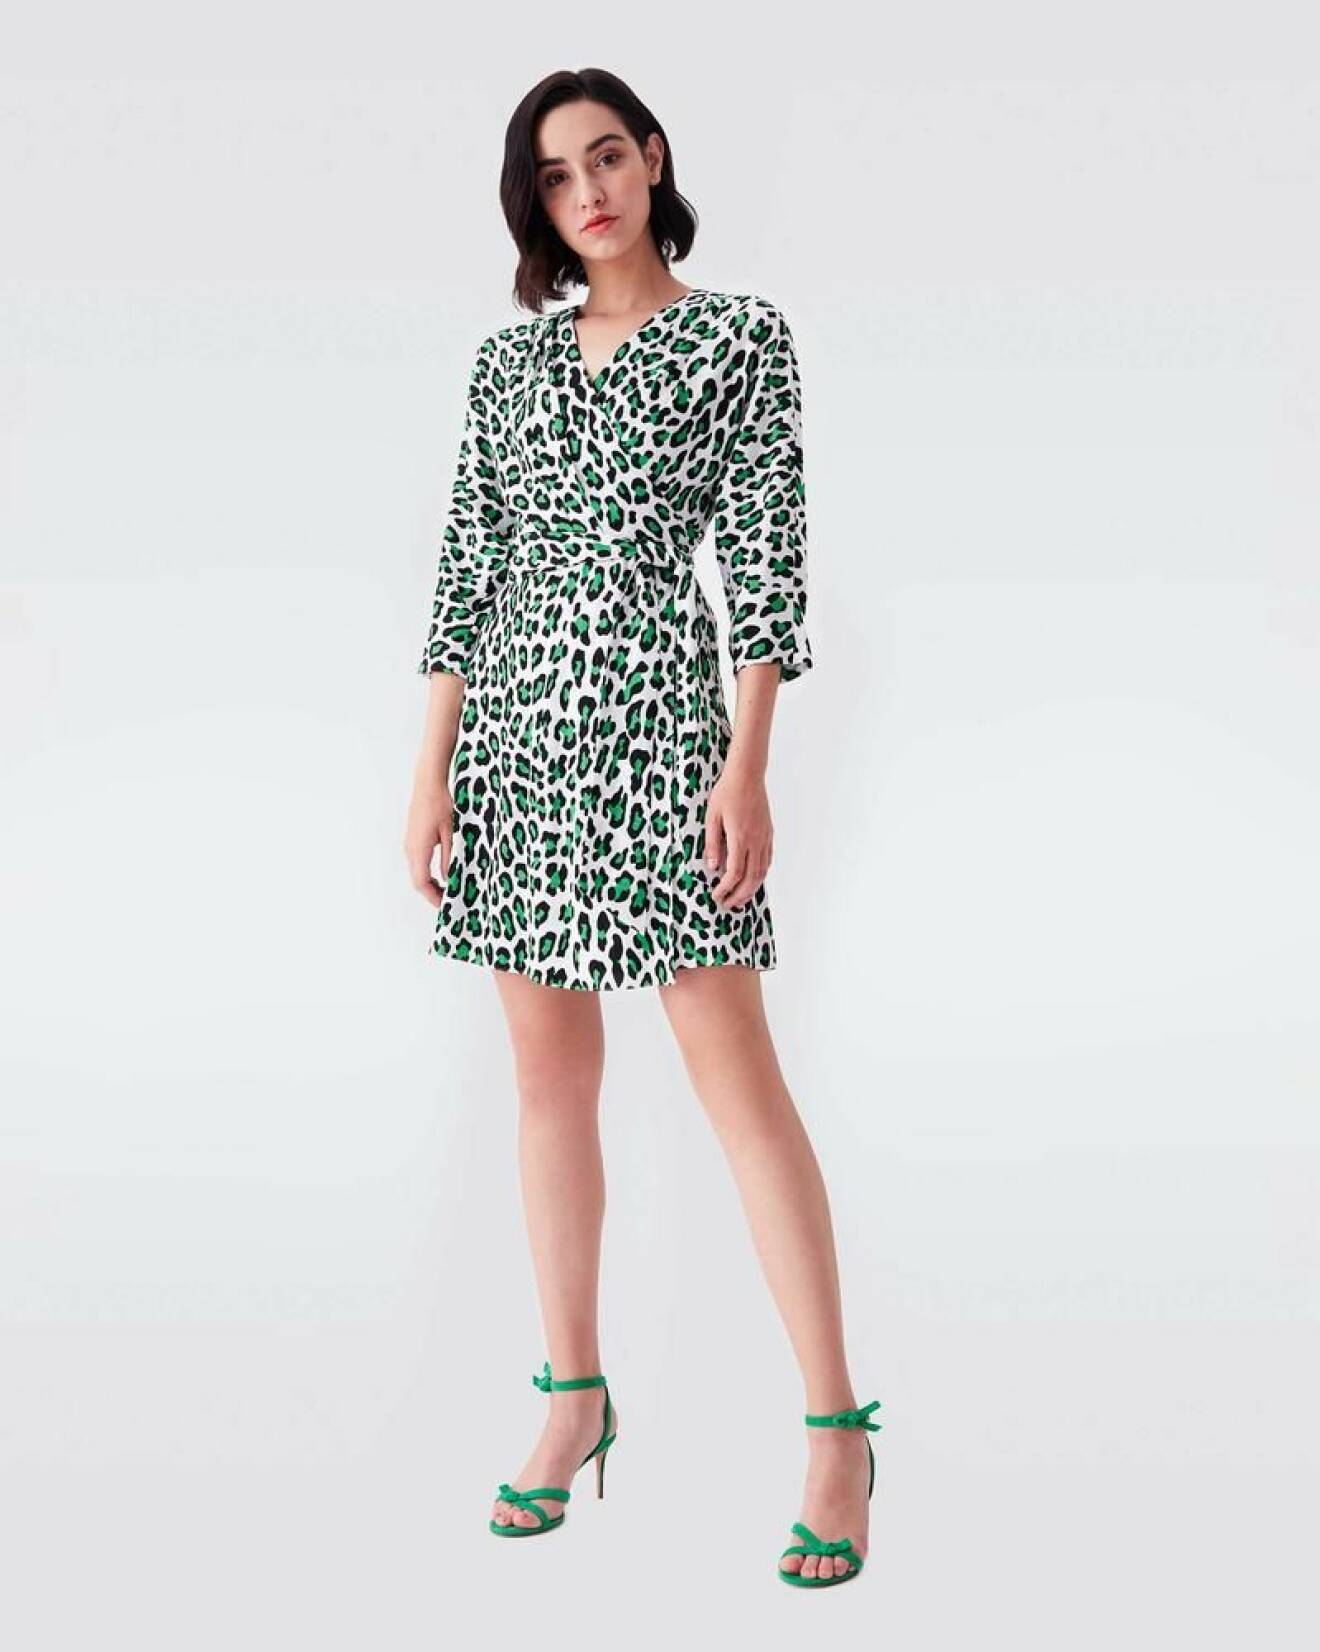 Wrap-klänning i kort modell. Leopardprint med grönt och svart på vit bakgrund.